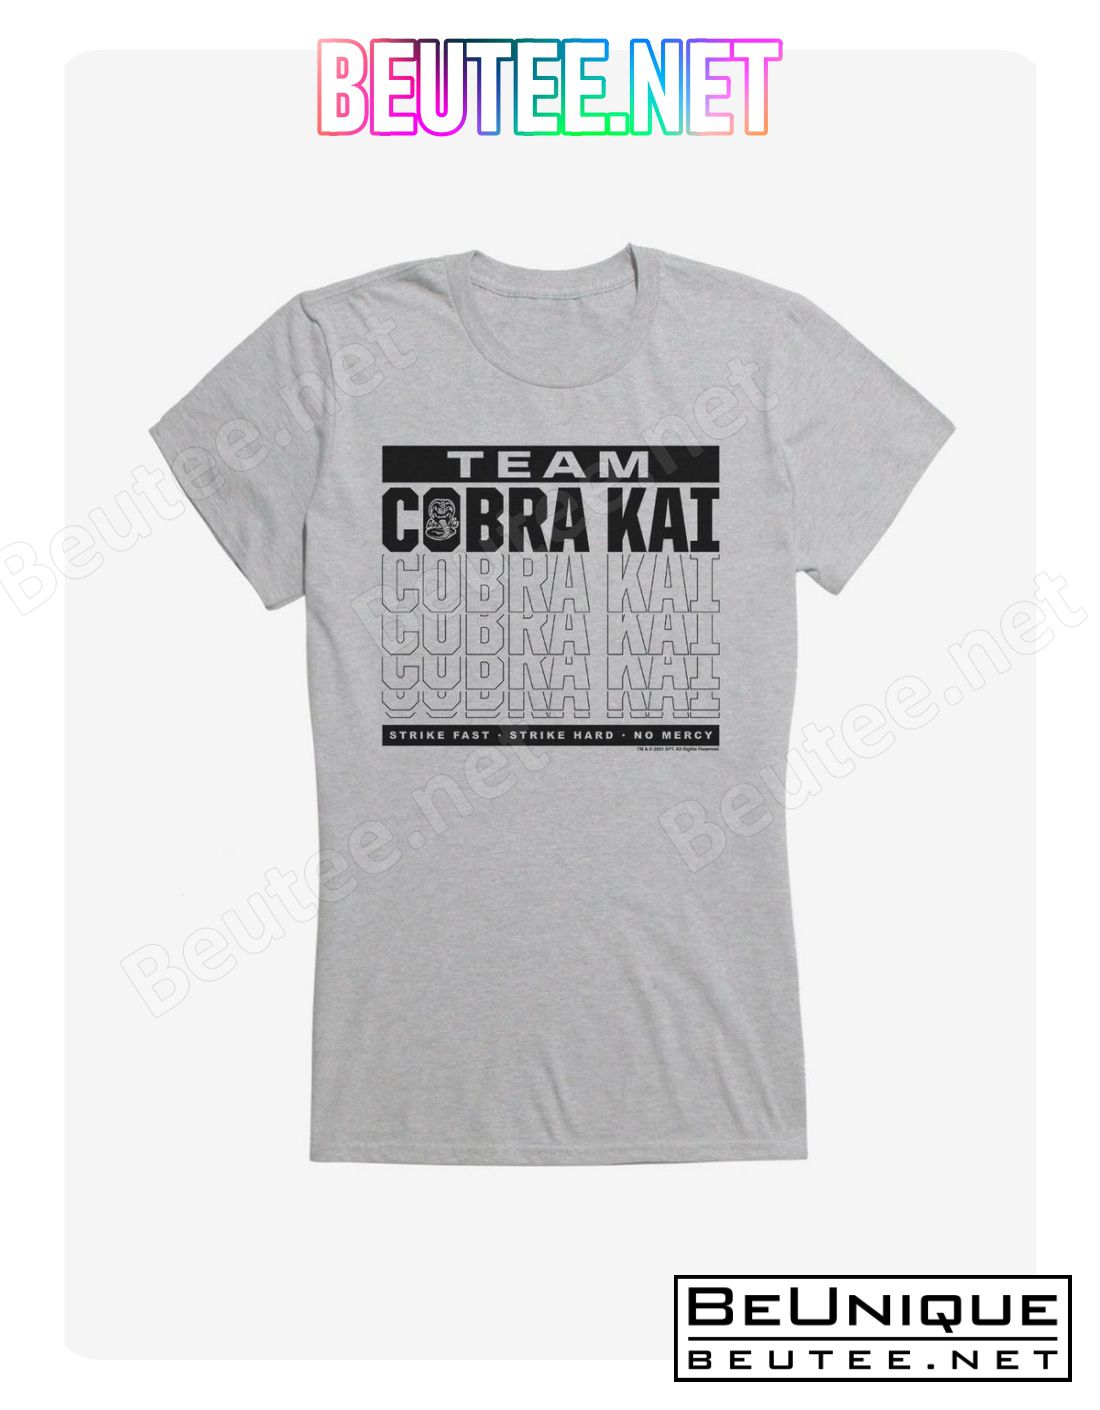 Cobra Kai S4 Team Motto T-Shirt